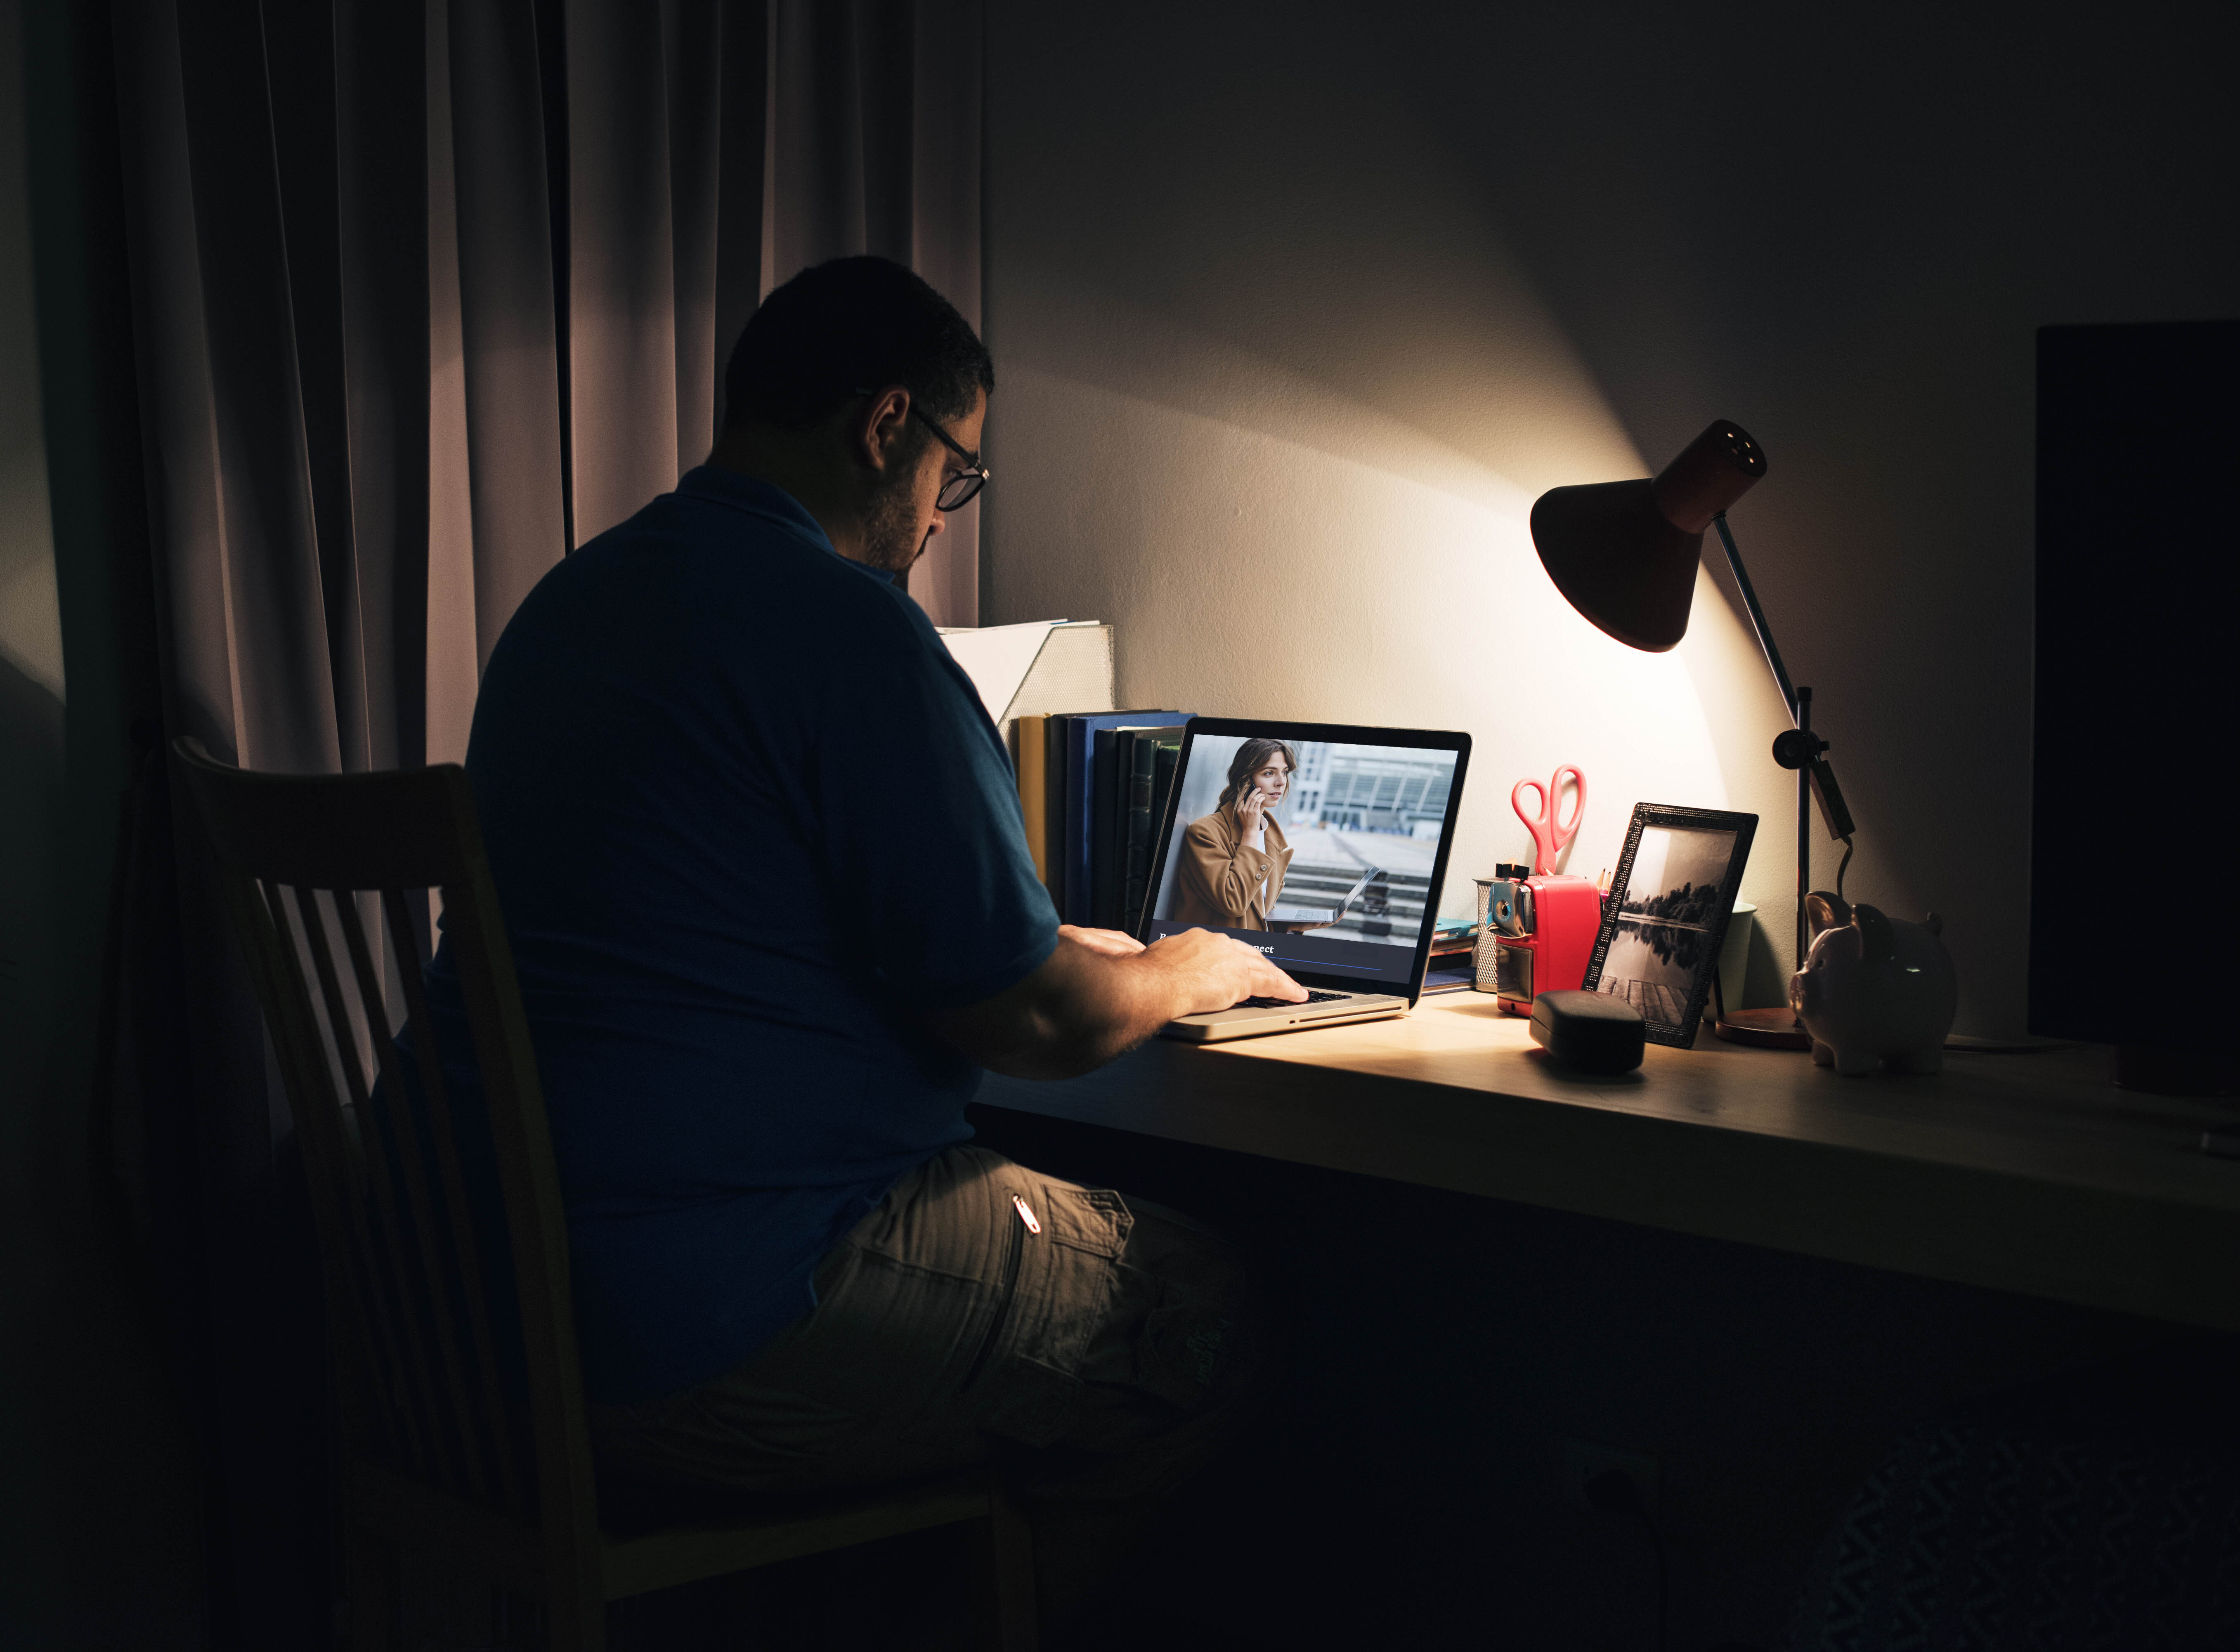 Ночные подработки в москве для мужчин. Парень за компьютером со спины. Человек ноутбук лампа. Работа ночью. Фото мужчины за компом.